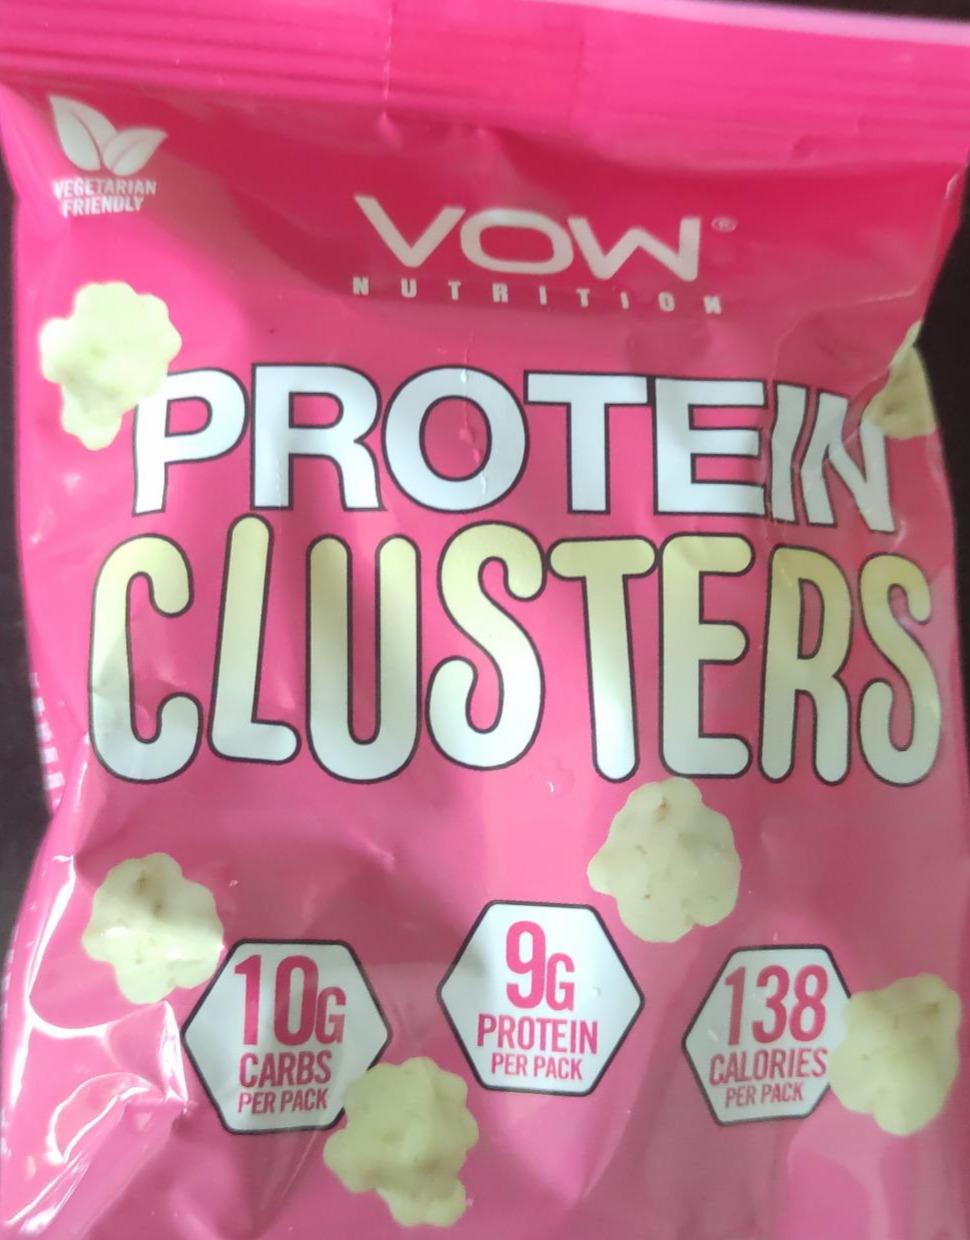 Zdjęcia - protein clusters biała czekolada VoW nutrition